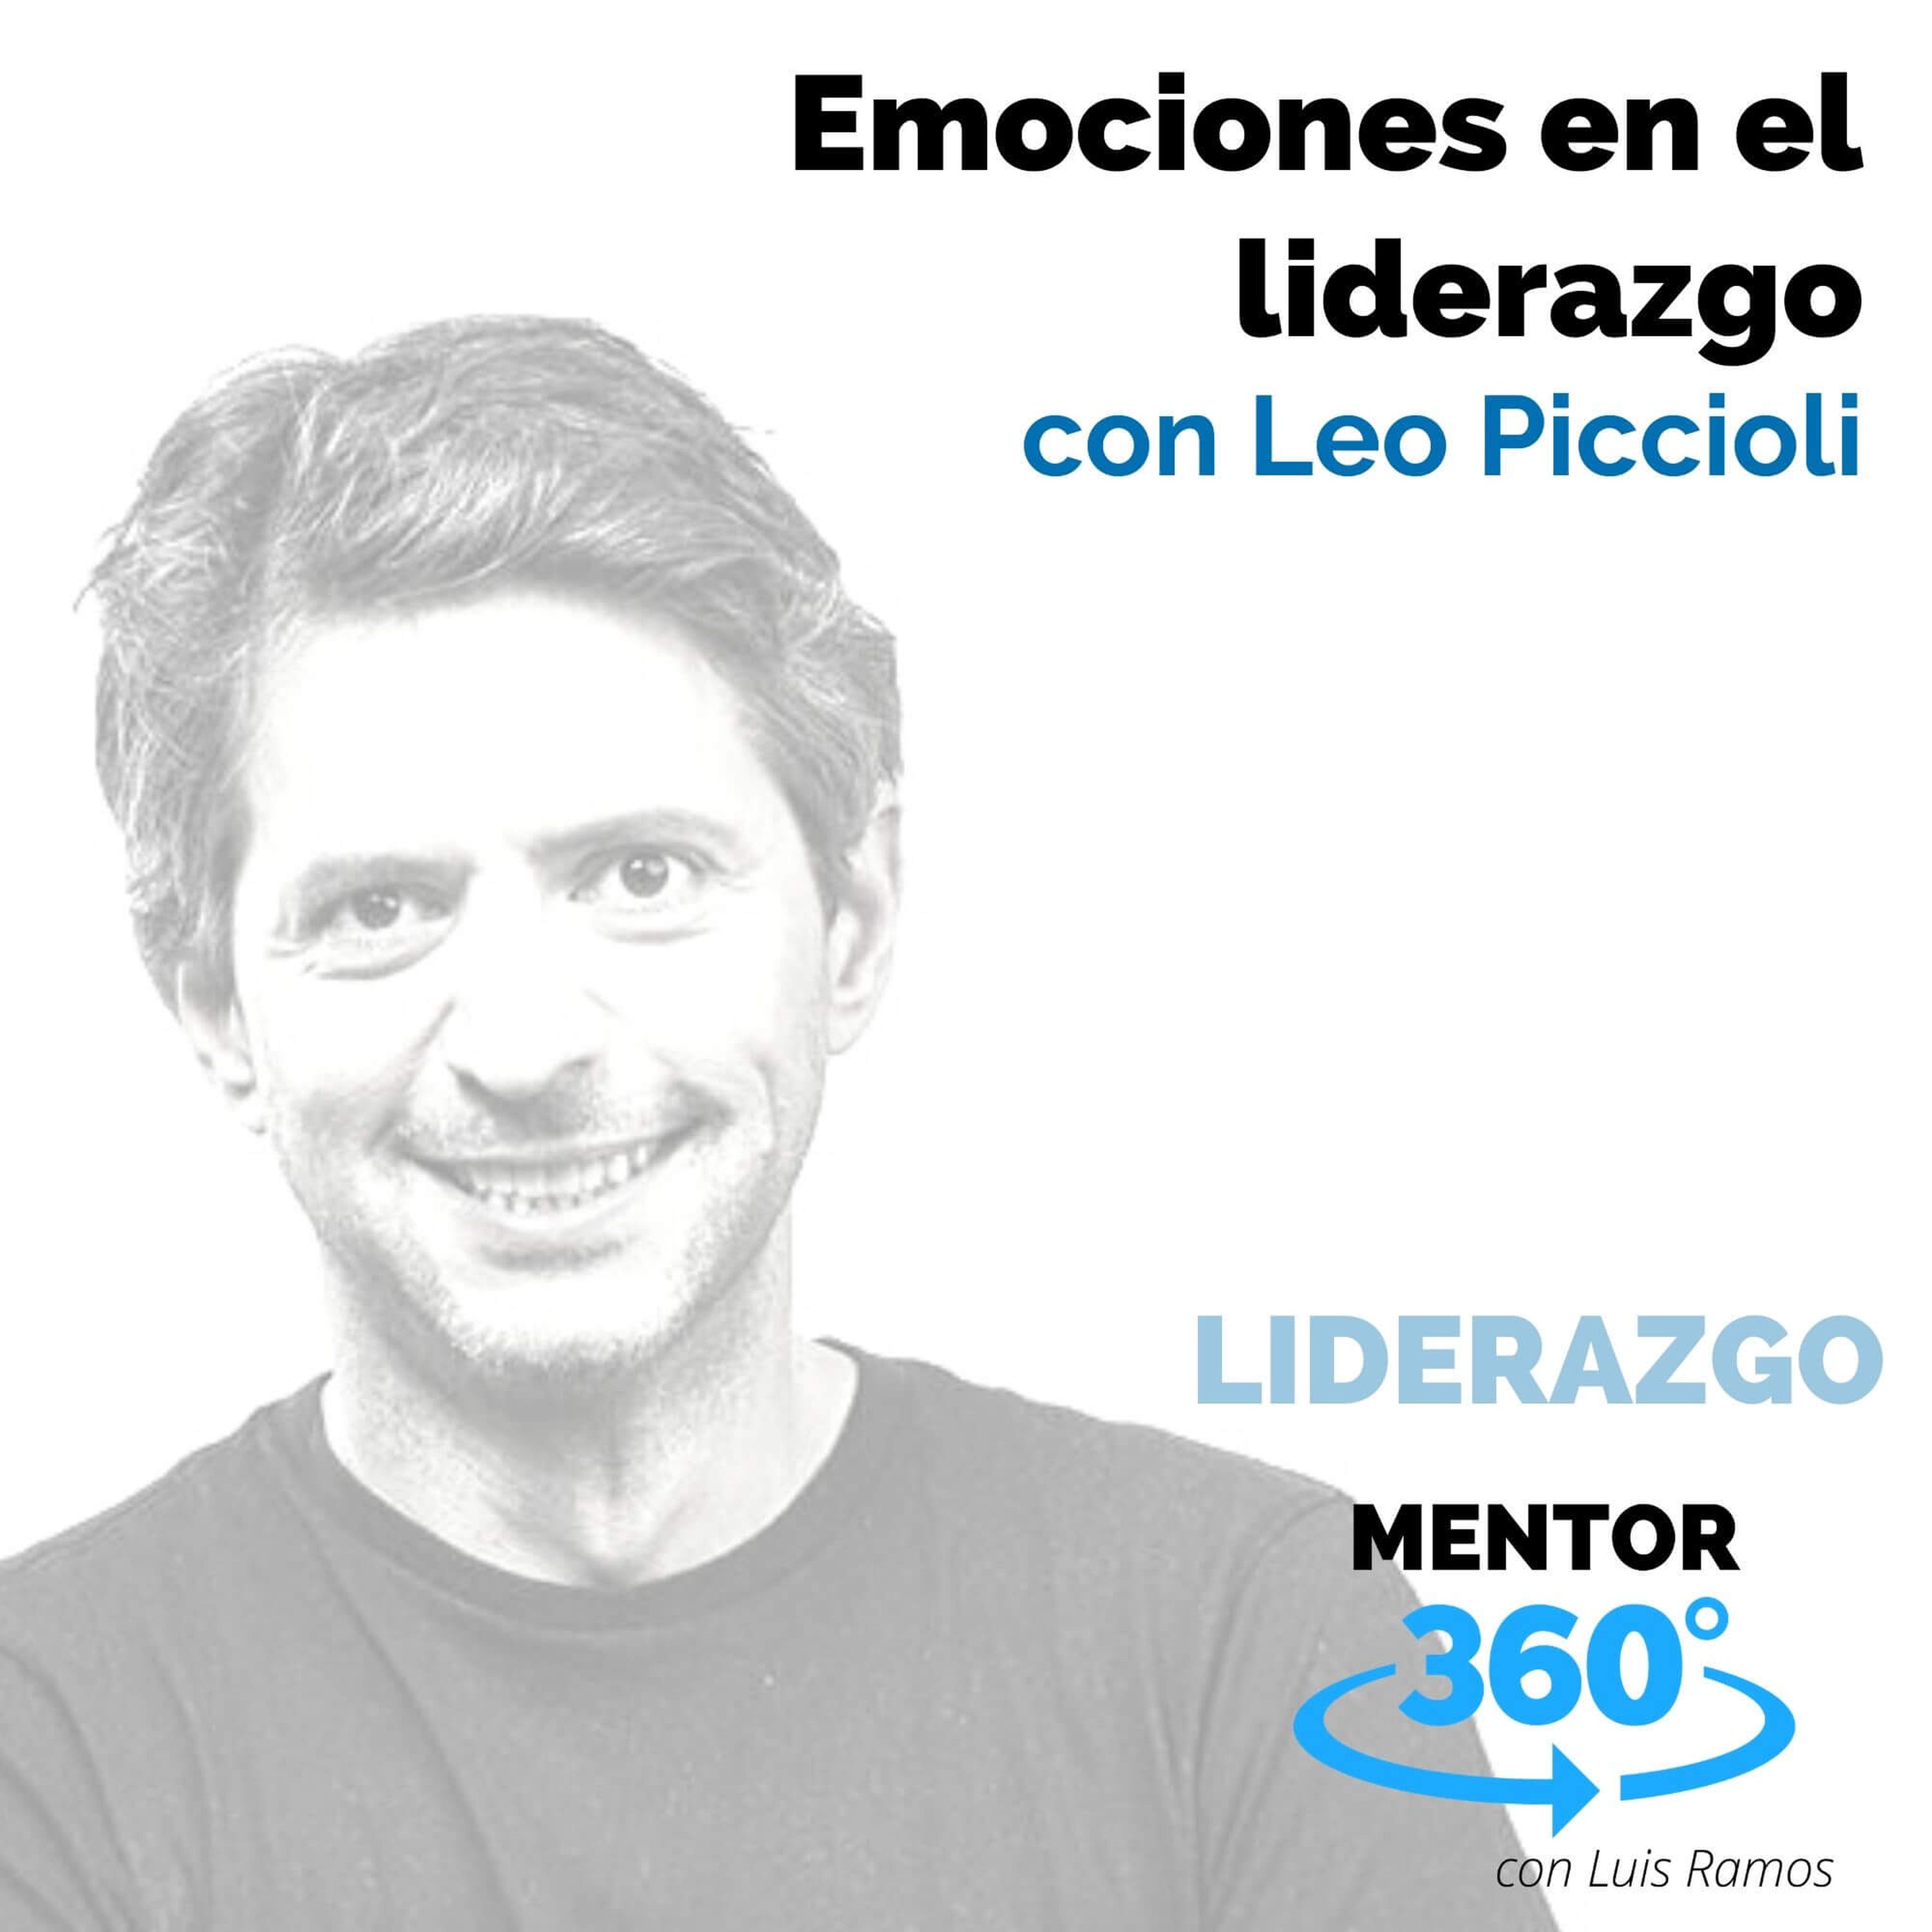 Emociones en el liderazgo, con Leo Piccioli - LIDERAZGO